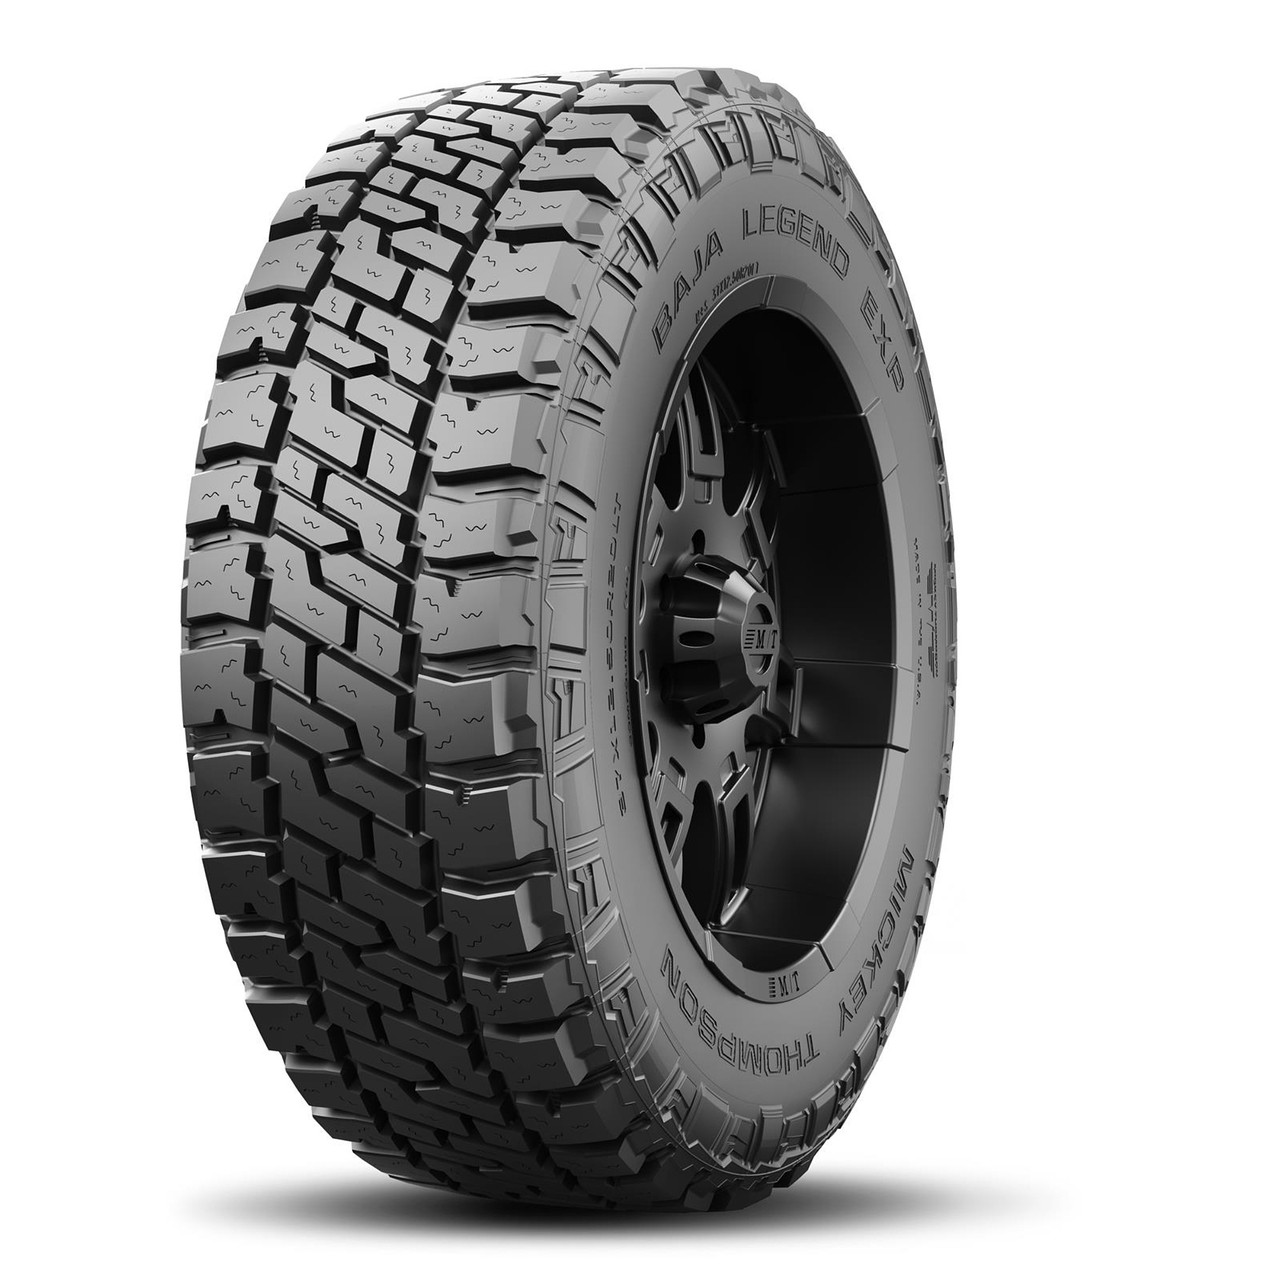 M/T Mickey Thomson Baja Legend EXP Tire LT265/70R18 124/121Q - MIC247538